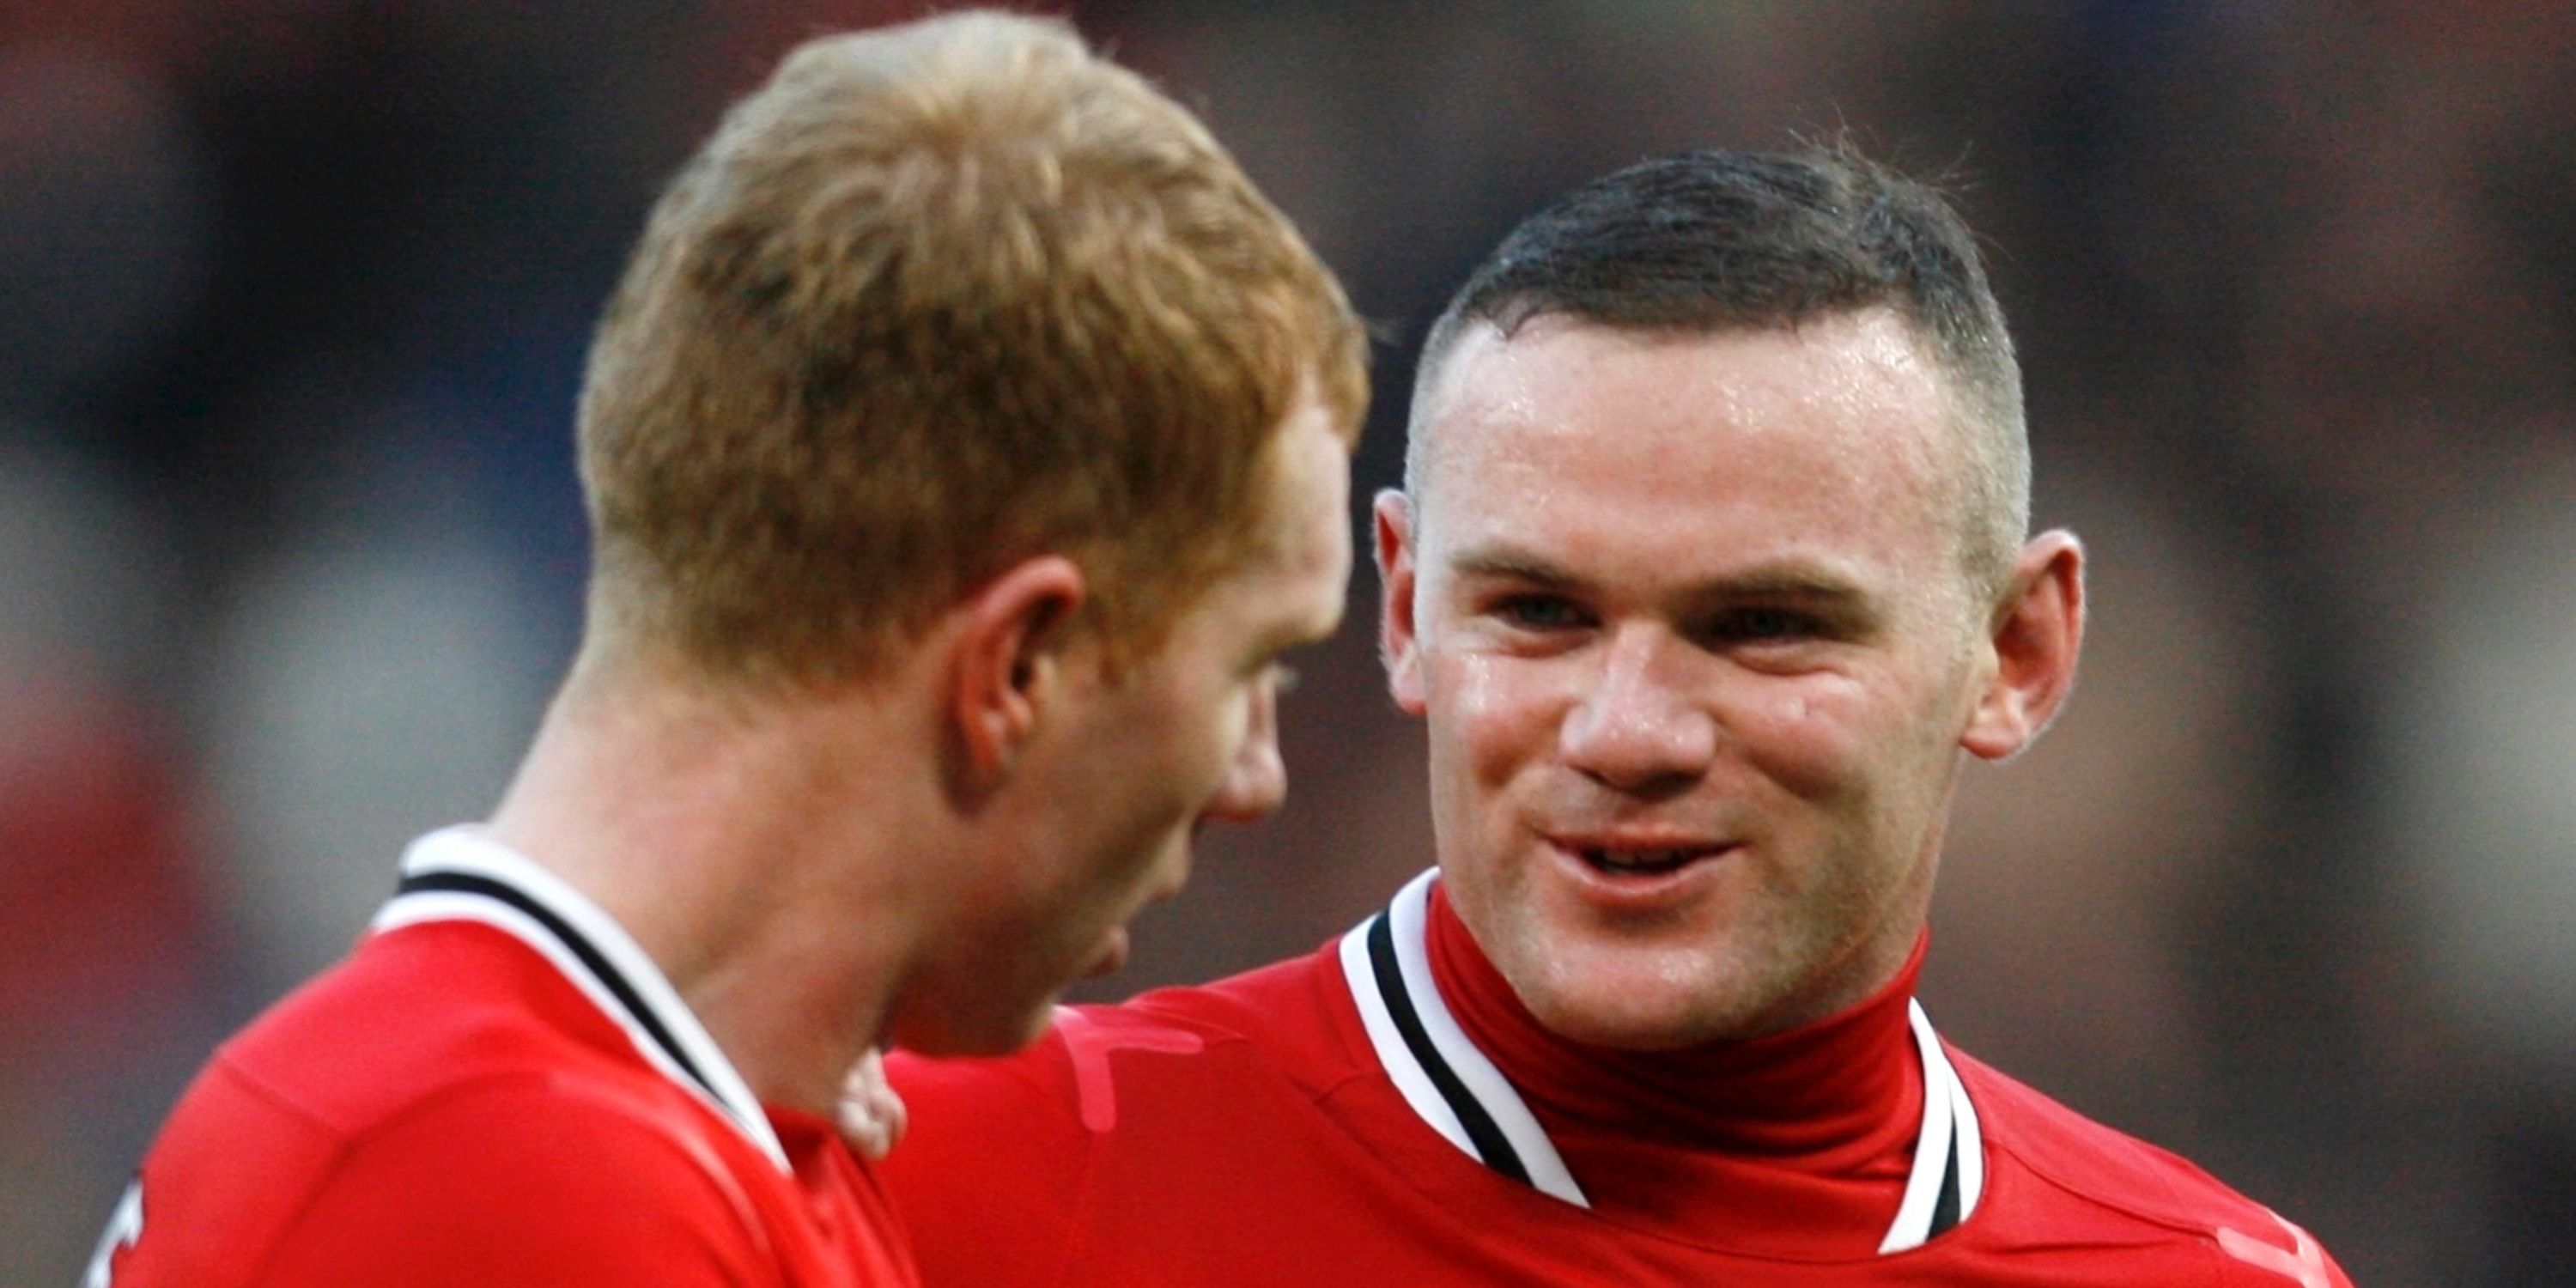 Scholes and Rooney